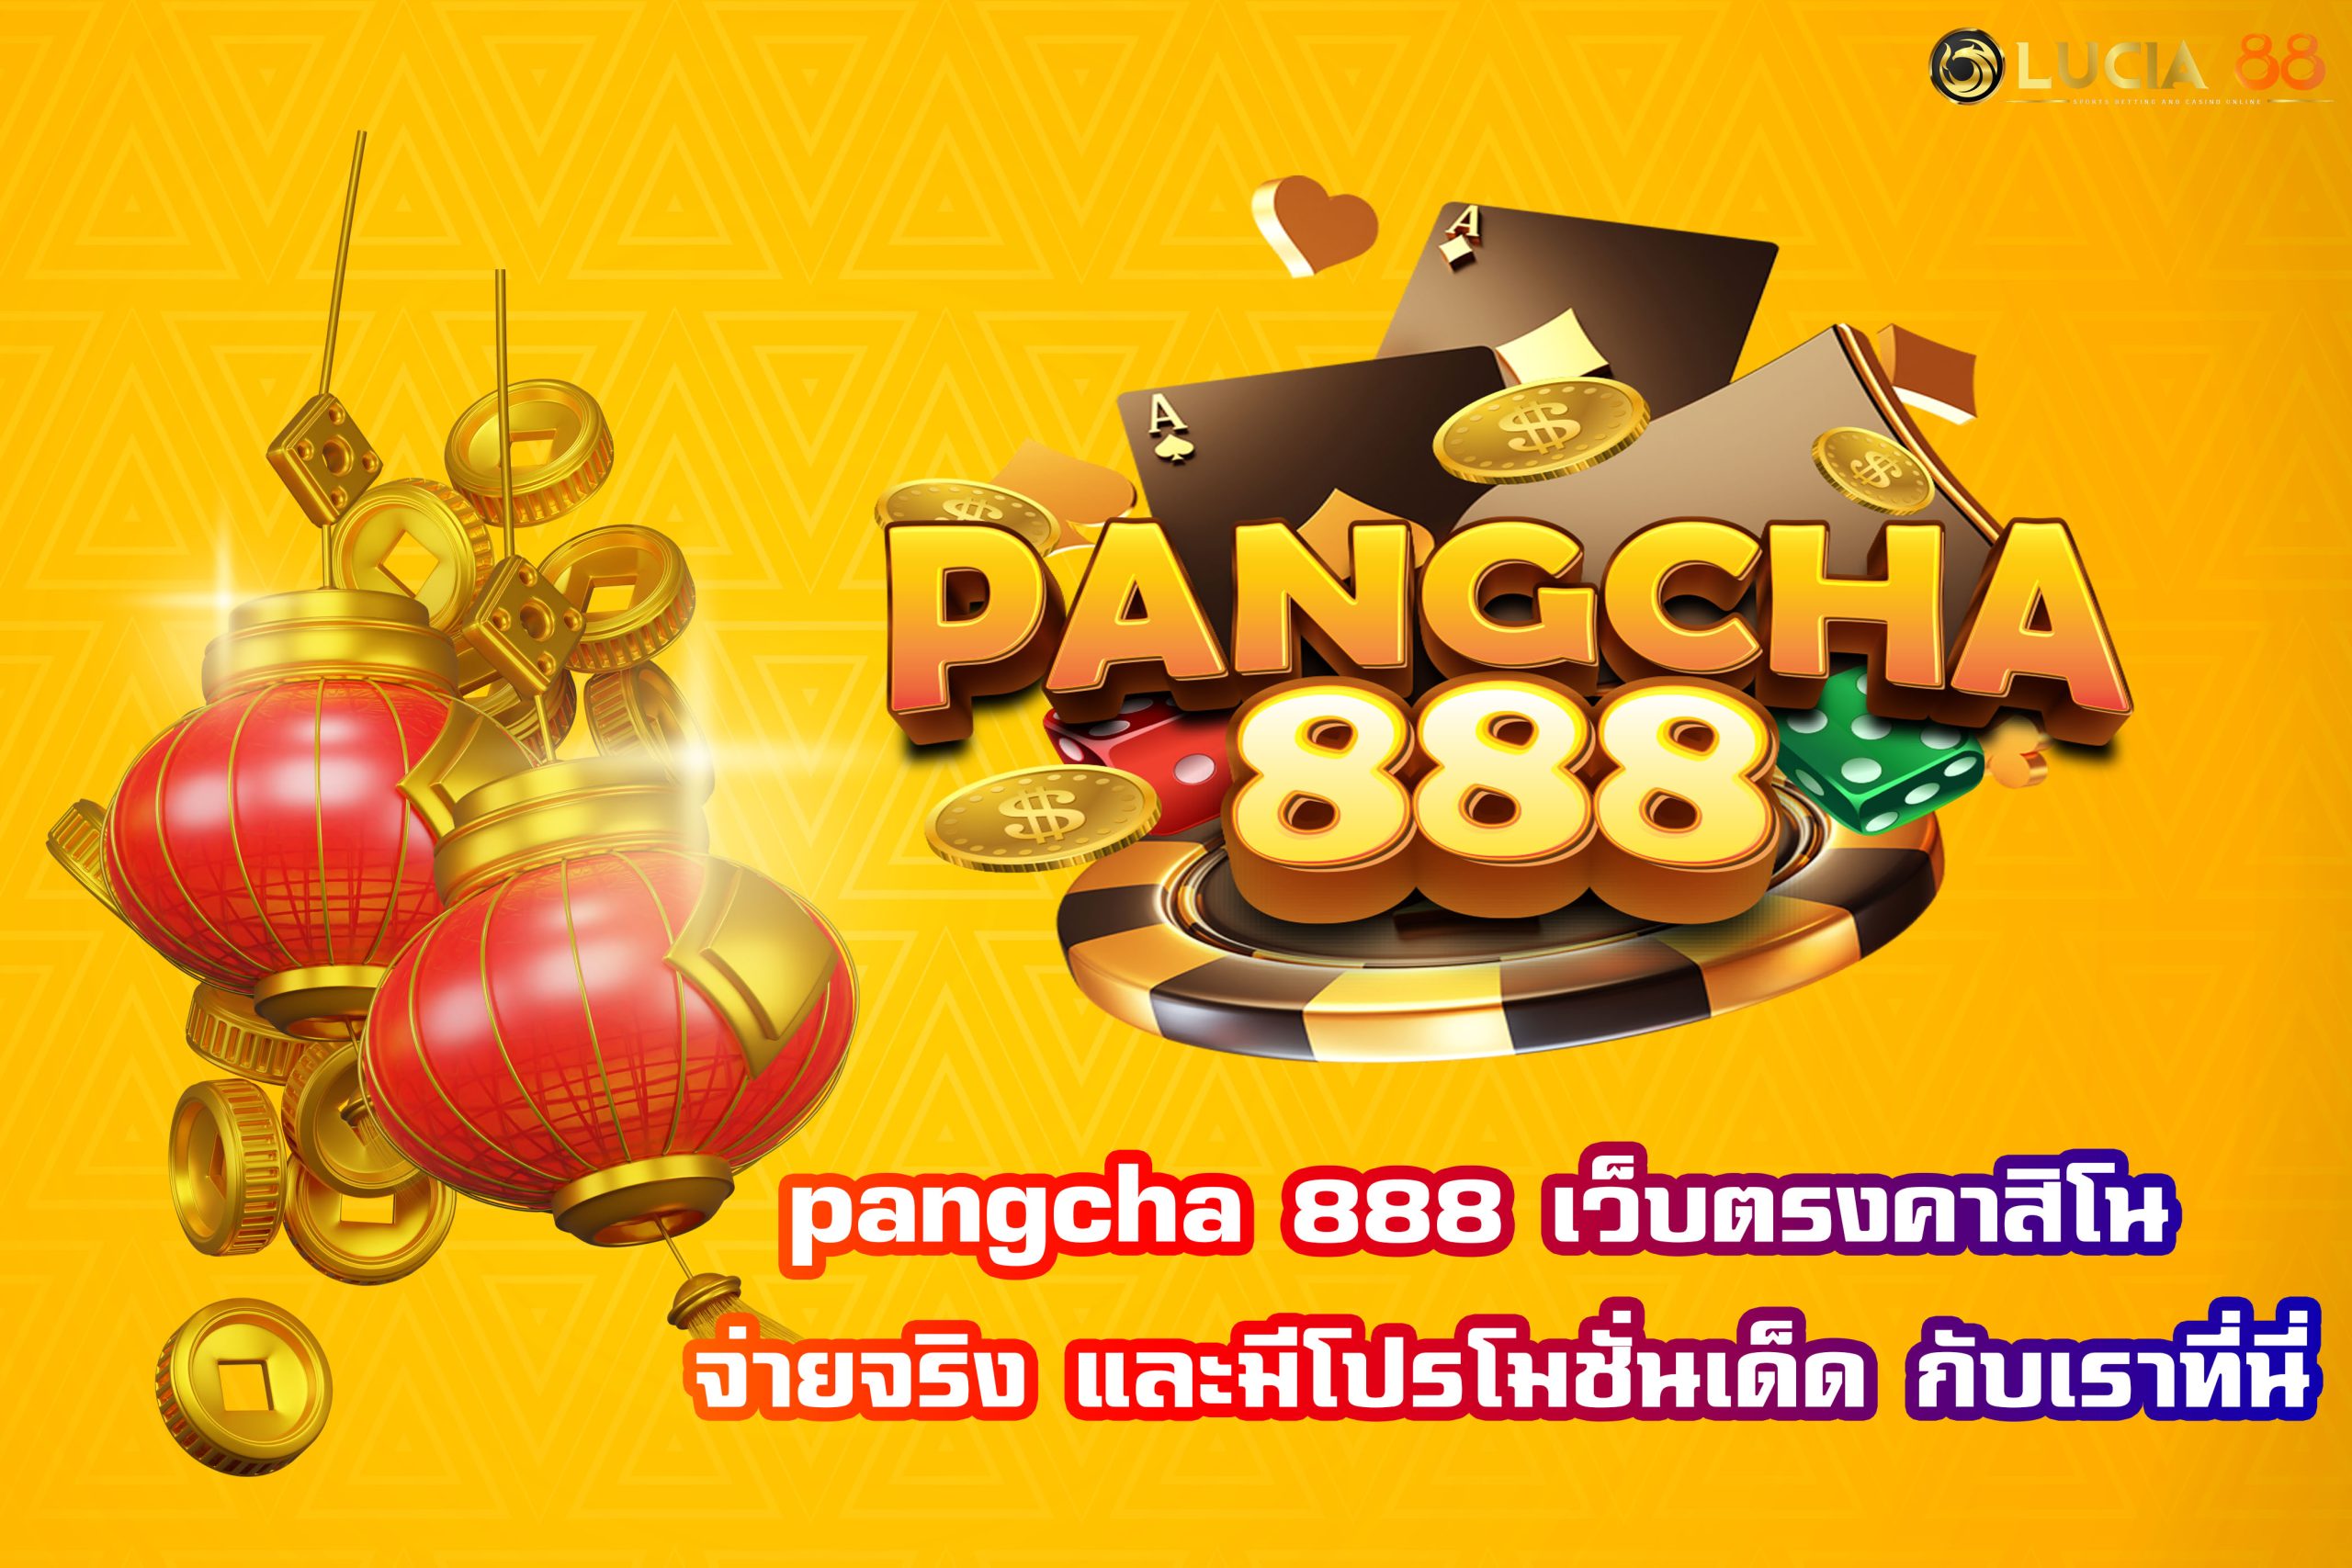 pangcha 888 เว็บตรงคาสิโน จ่ายจริง และมีโปรโมชั่นเด็ด กับเราที่นี่